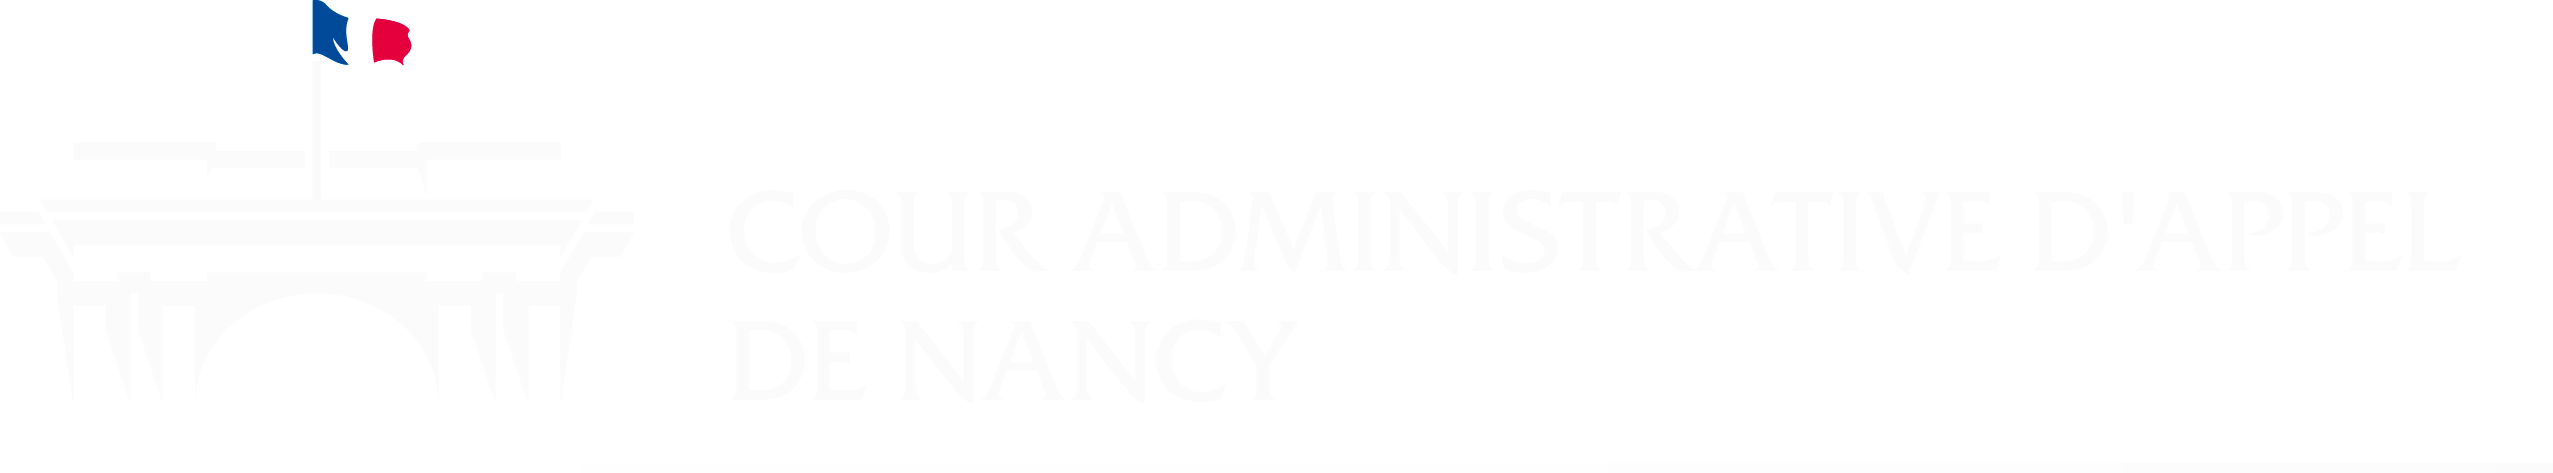 Logo Cour administrative d'appel de Nancy